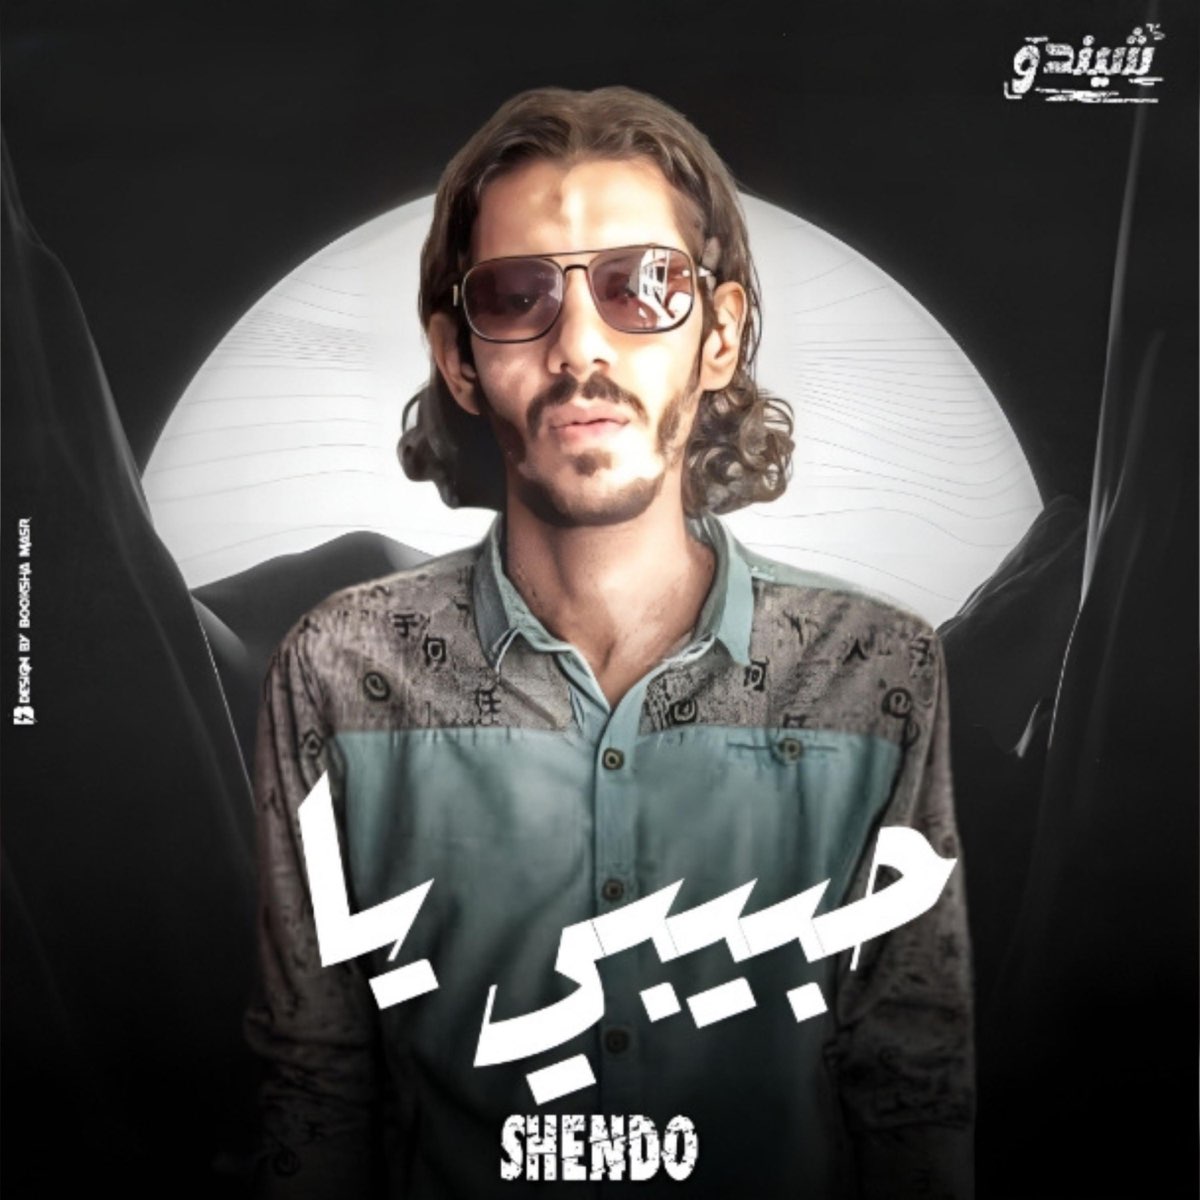 ‎حبيبي يا - Single - Album by Shendo - شيندو - Apple Music